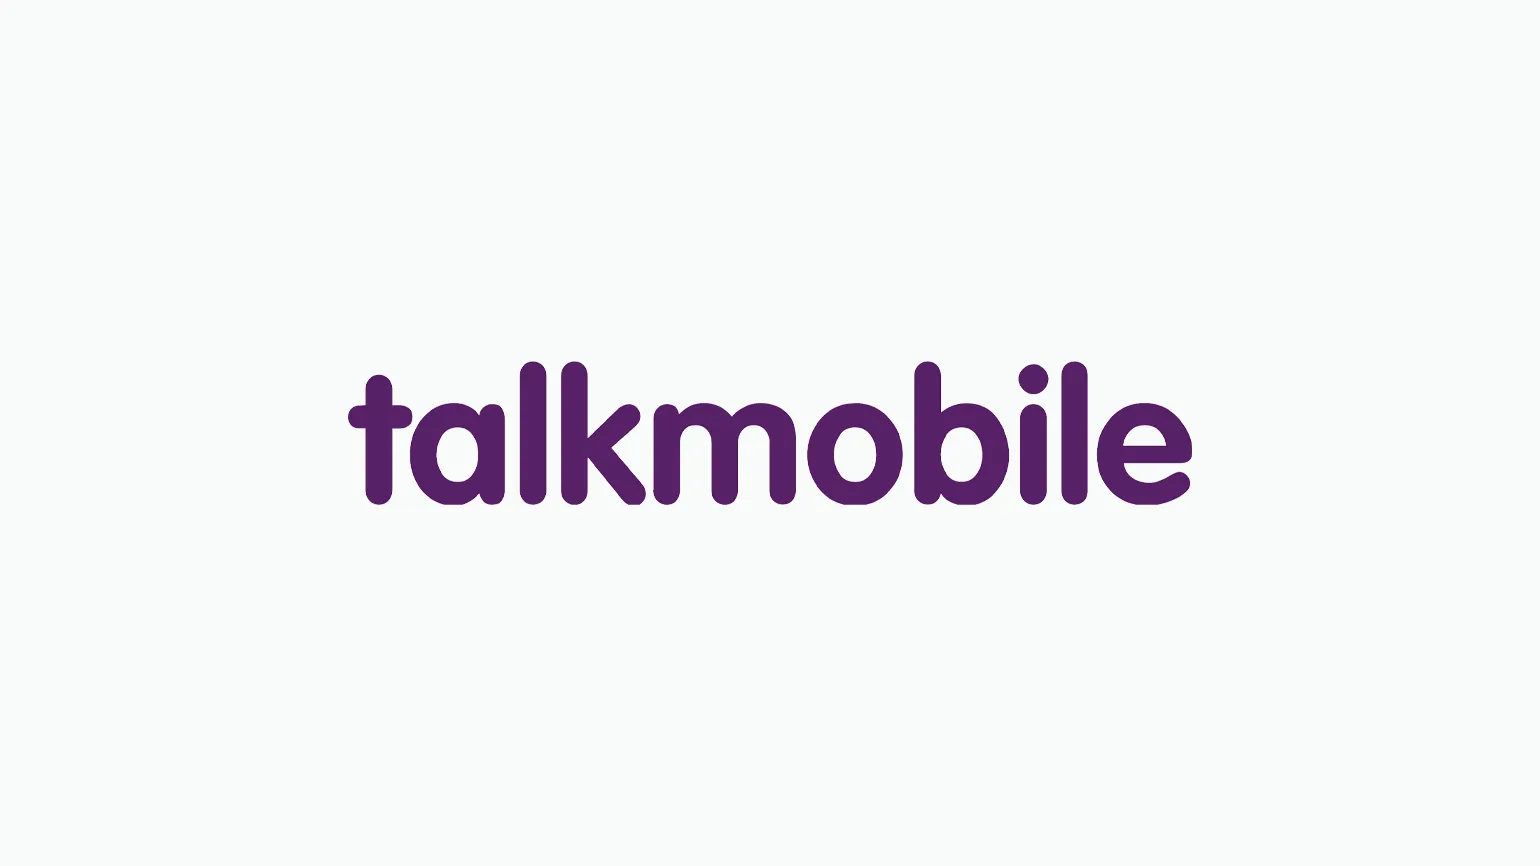 Talkmobile price increases